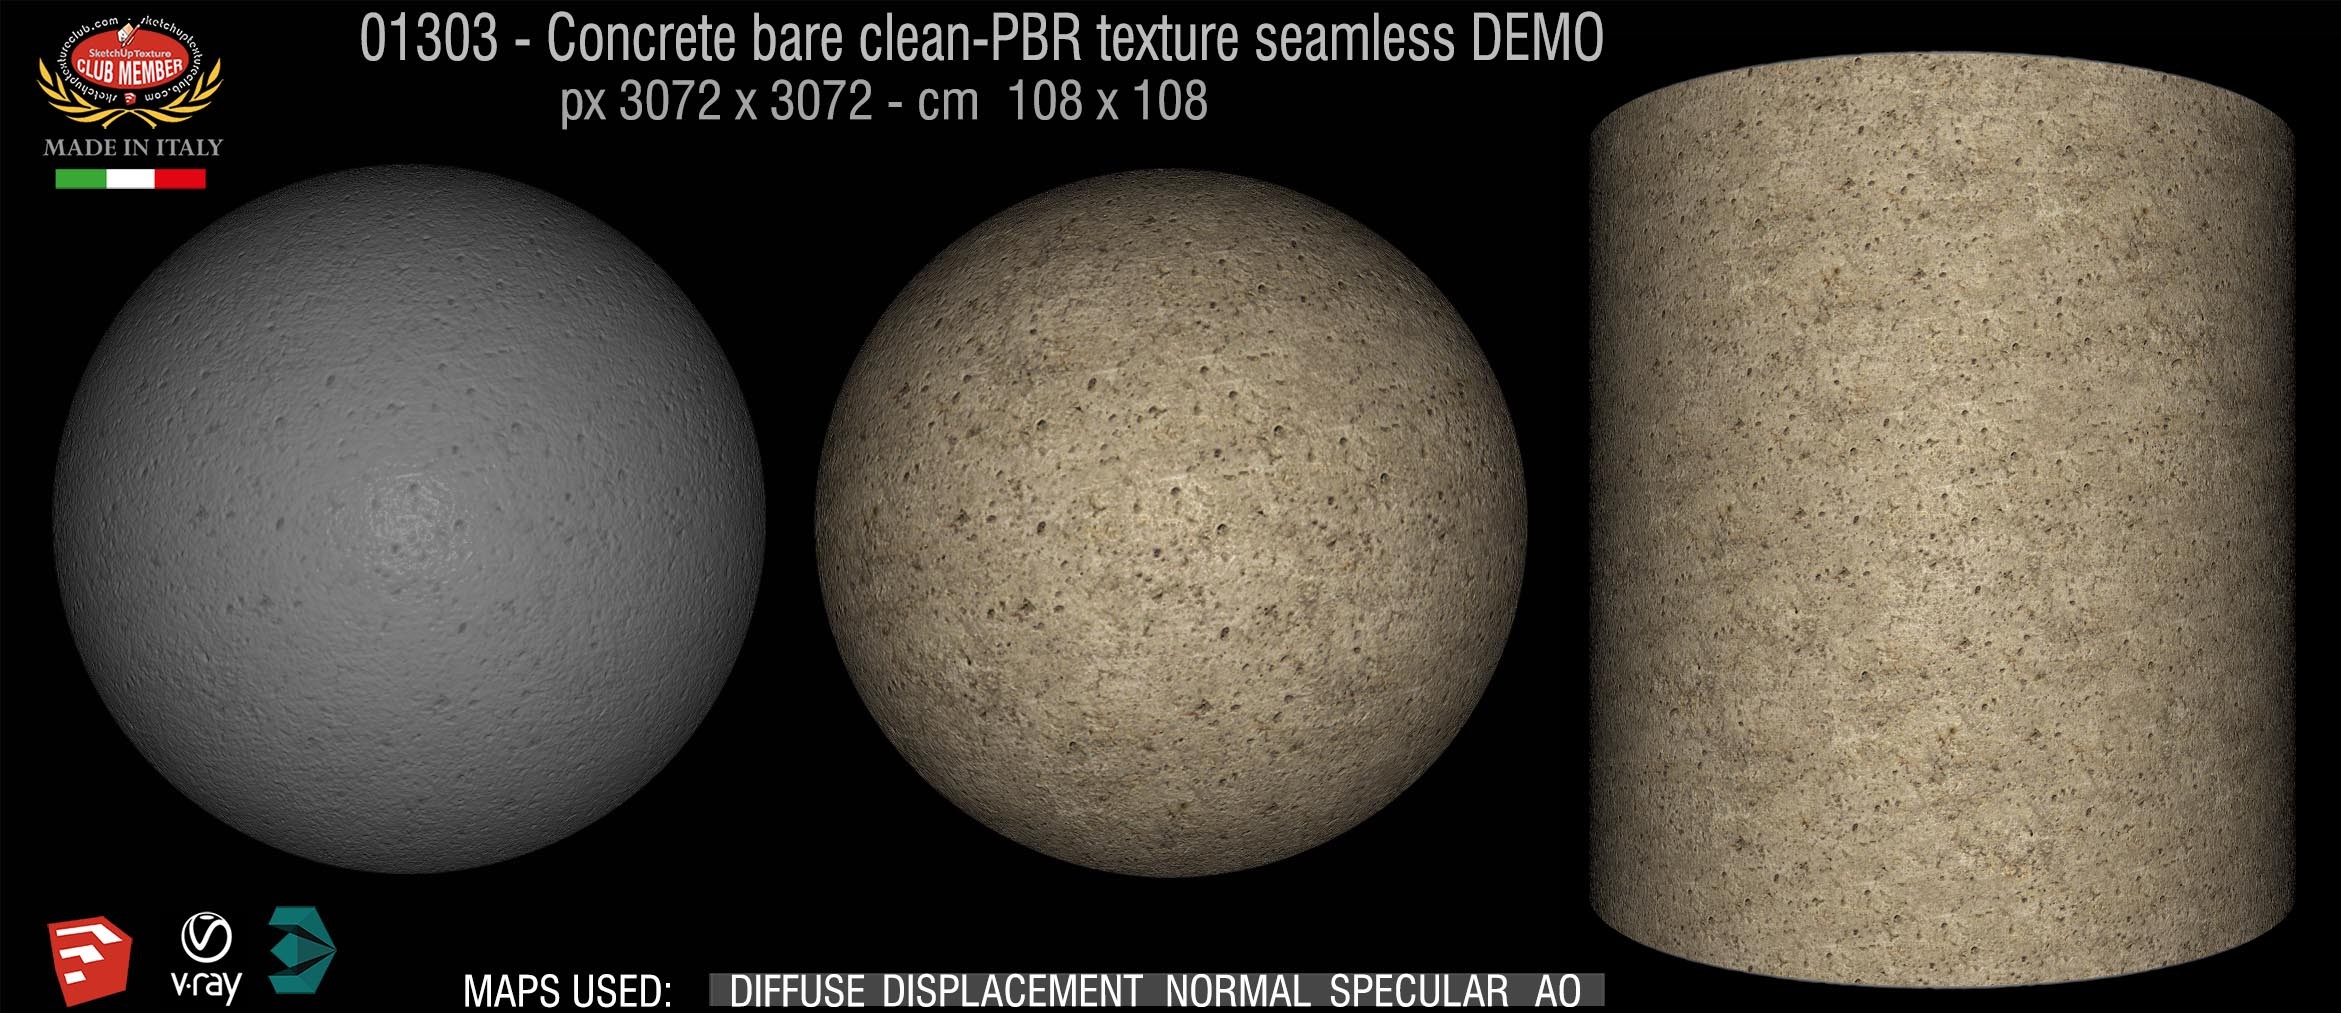 01303 Concrete bare clean-PBR texture seamless DEMO